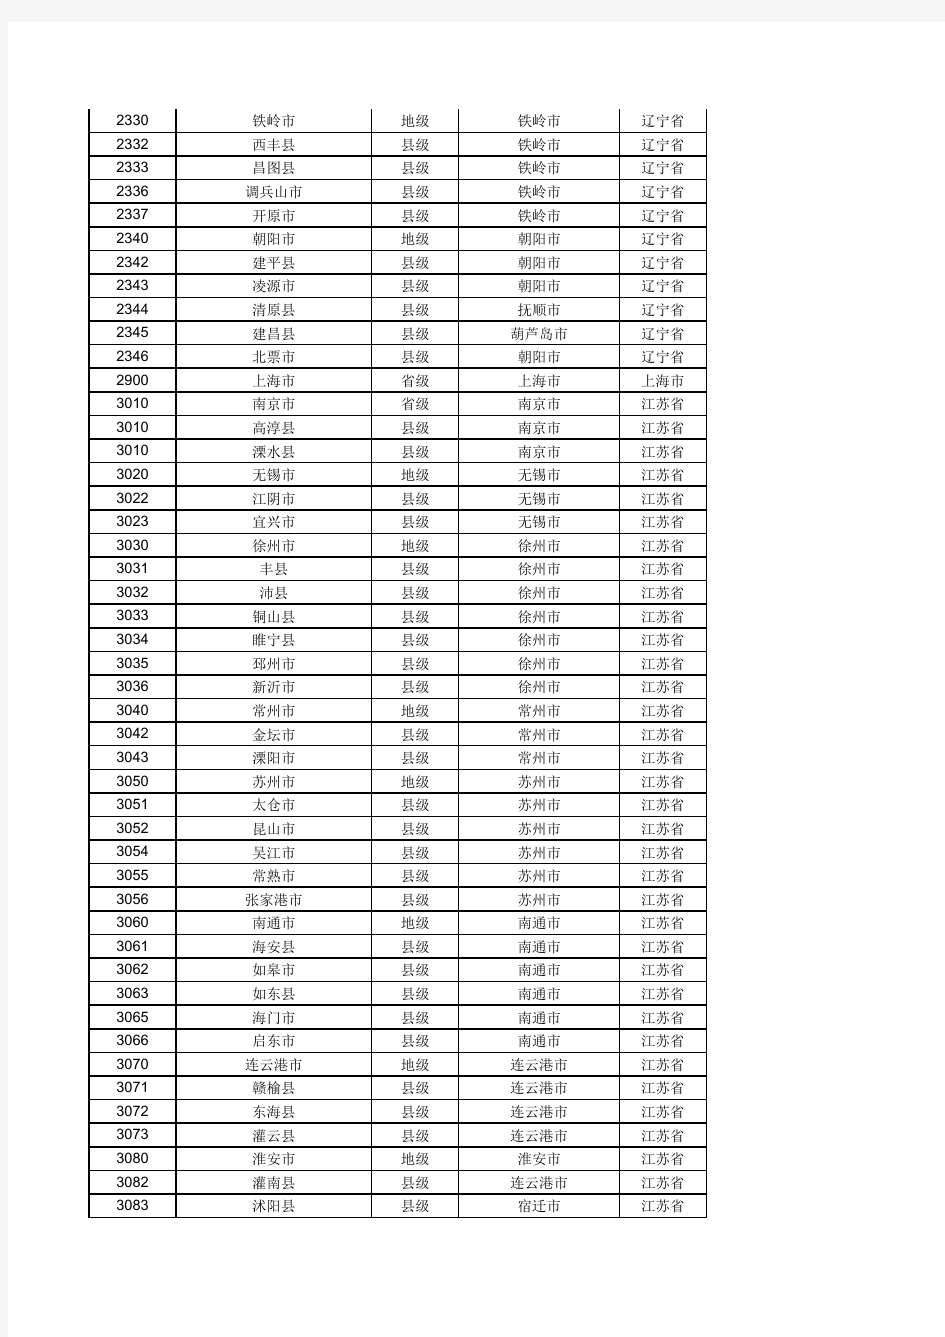 国内各大银行城市代码对照表++